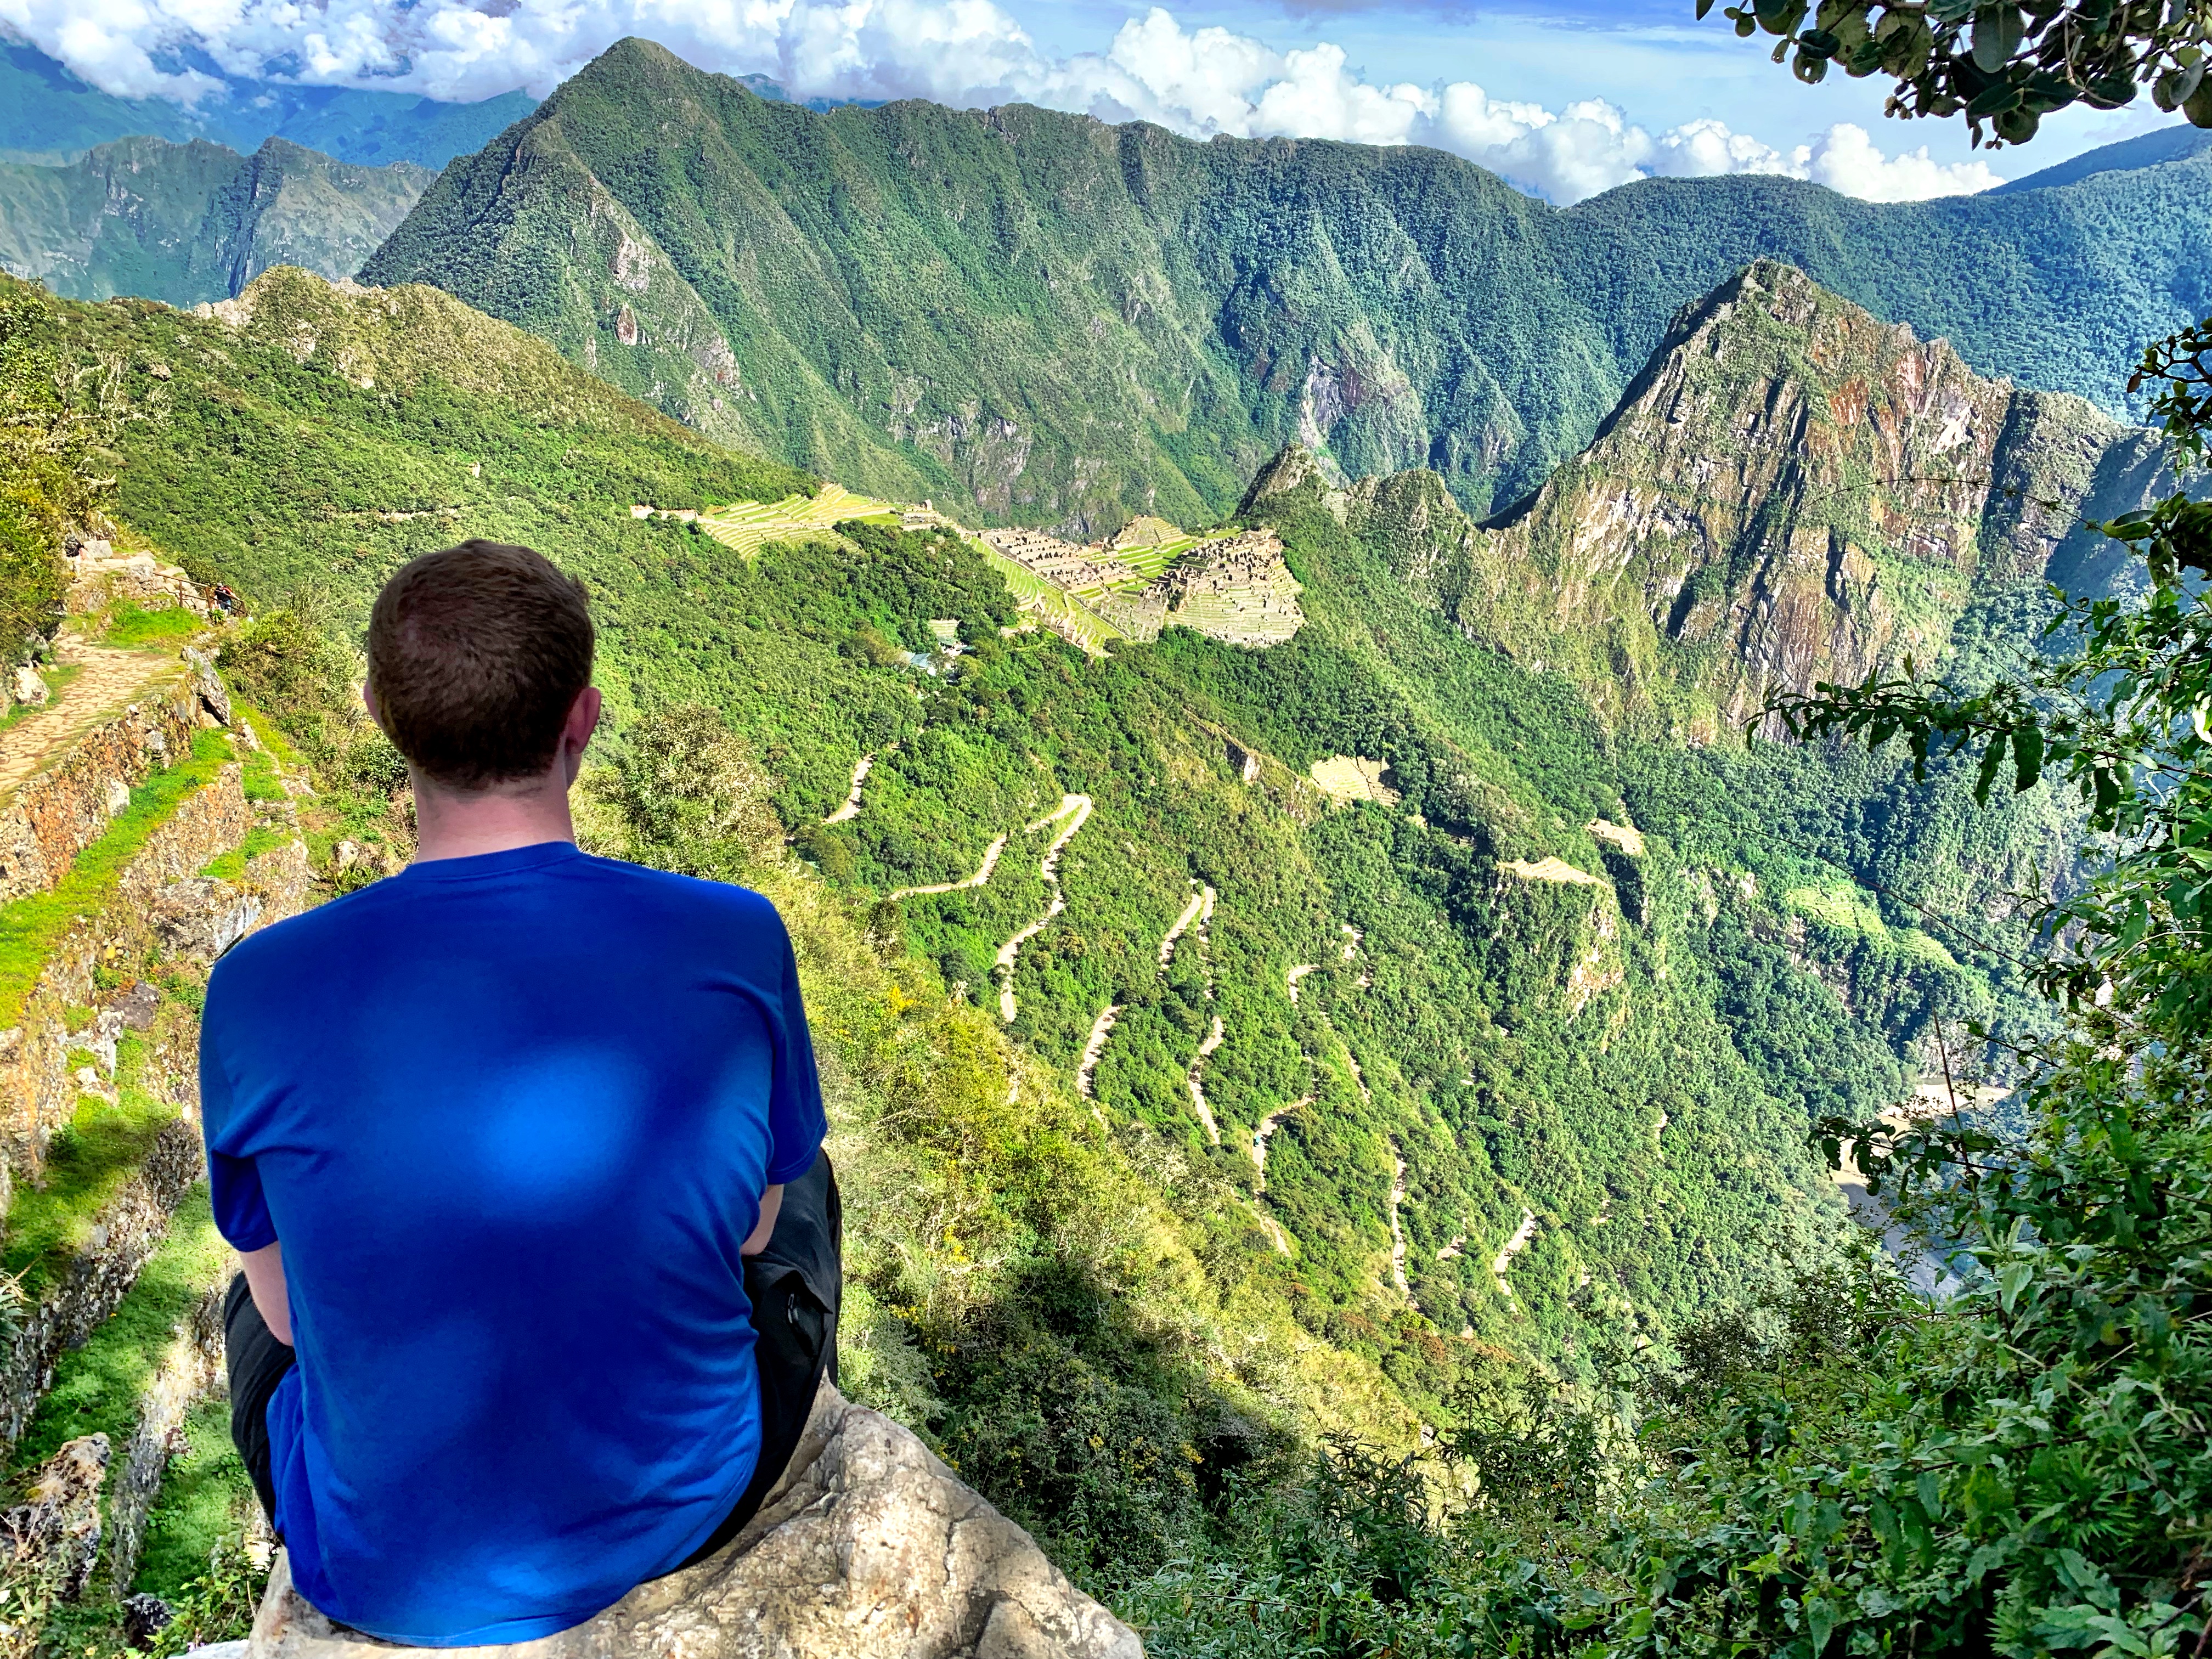 View from Sun Gate at Machu Picchu